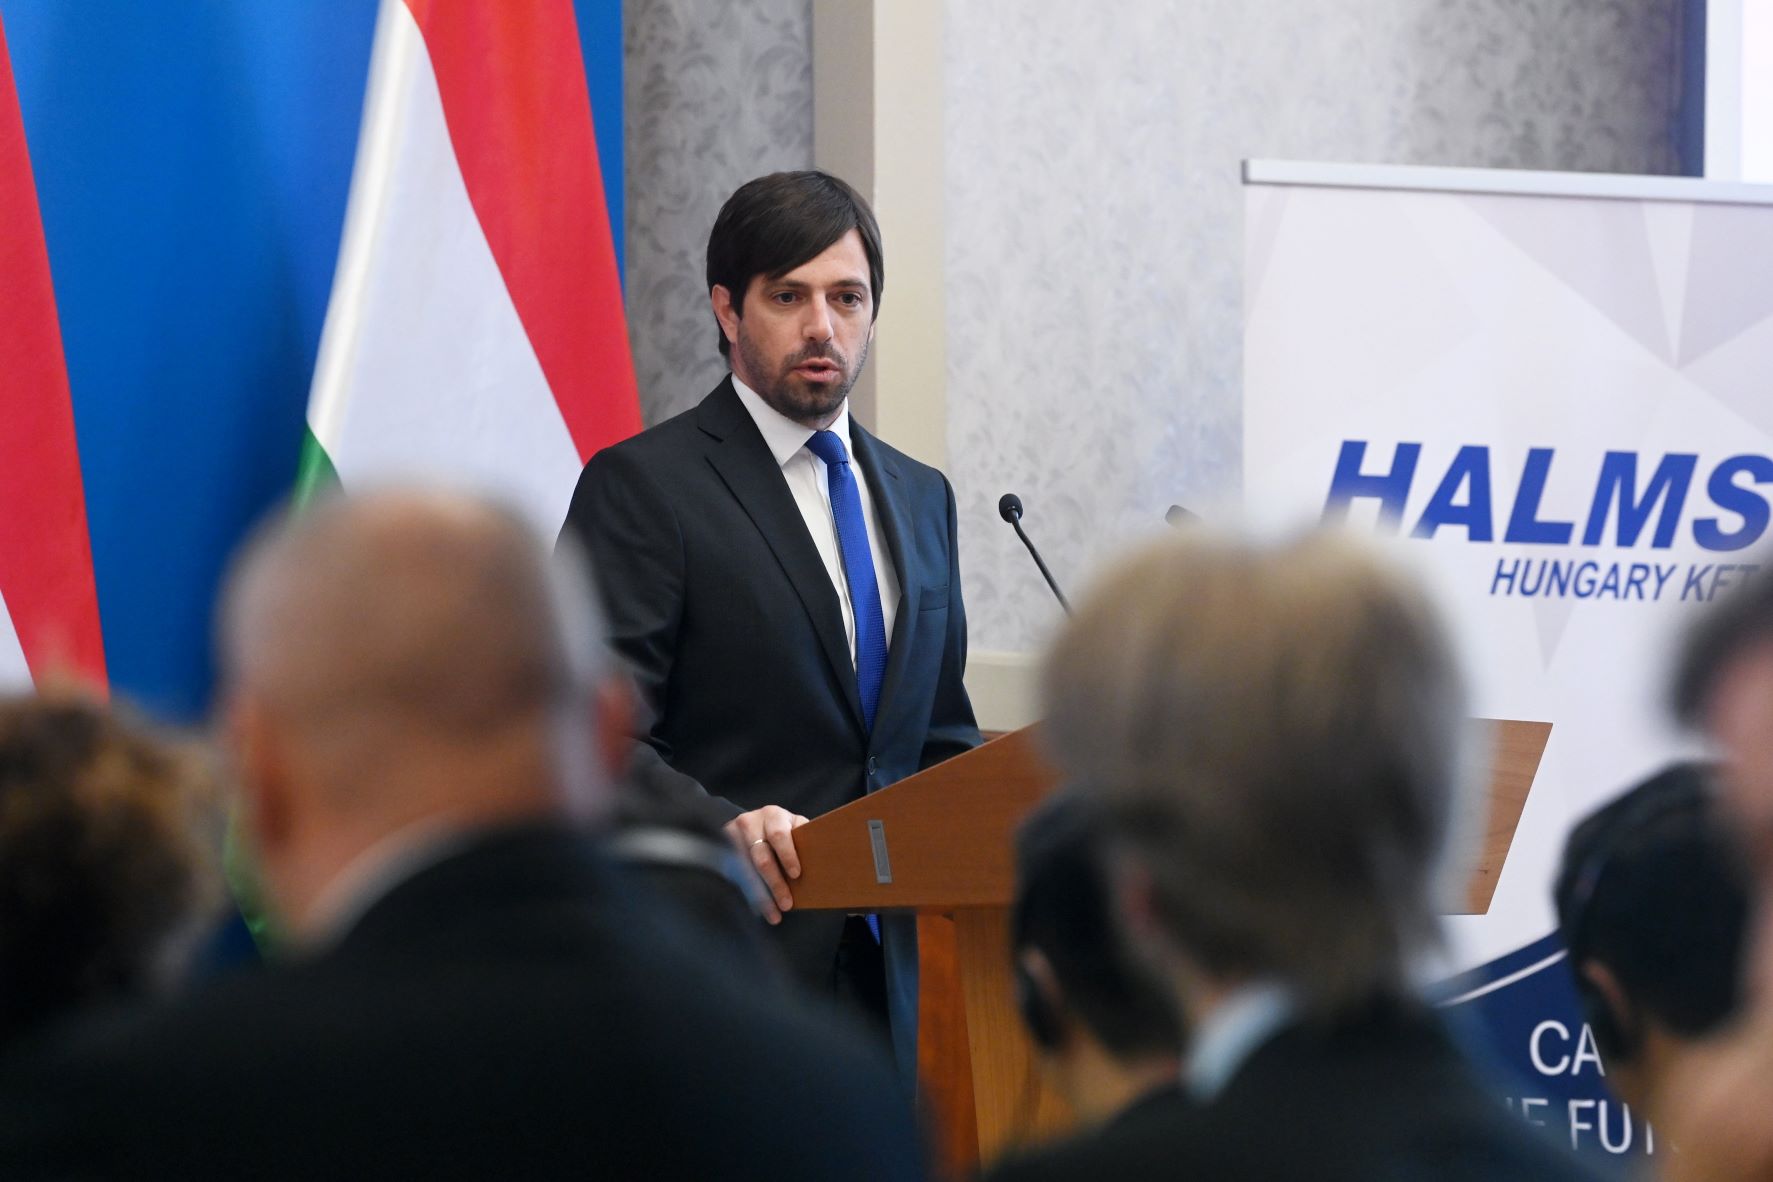 Magyar Levente, a tárca parlamenti államtitkára a Halms Hungary Kft. beruházásáról tartott sajtótájékoztatón a Külgazdasági és Külügyminisztériumban 2022. szeptember 6-án.